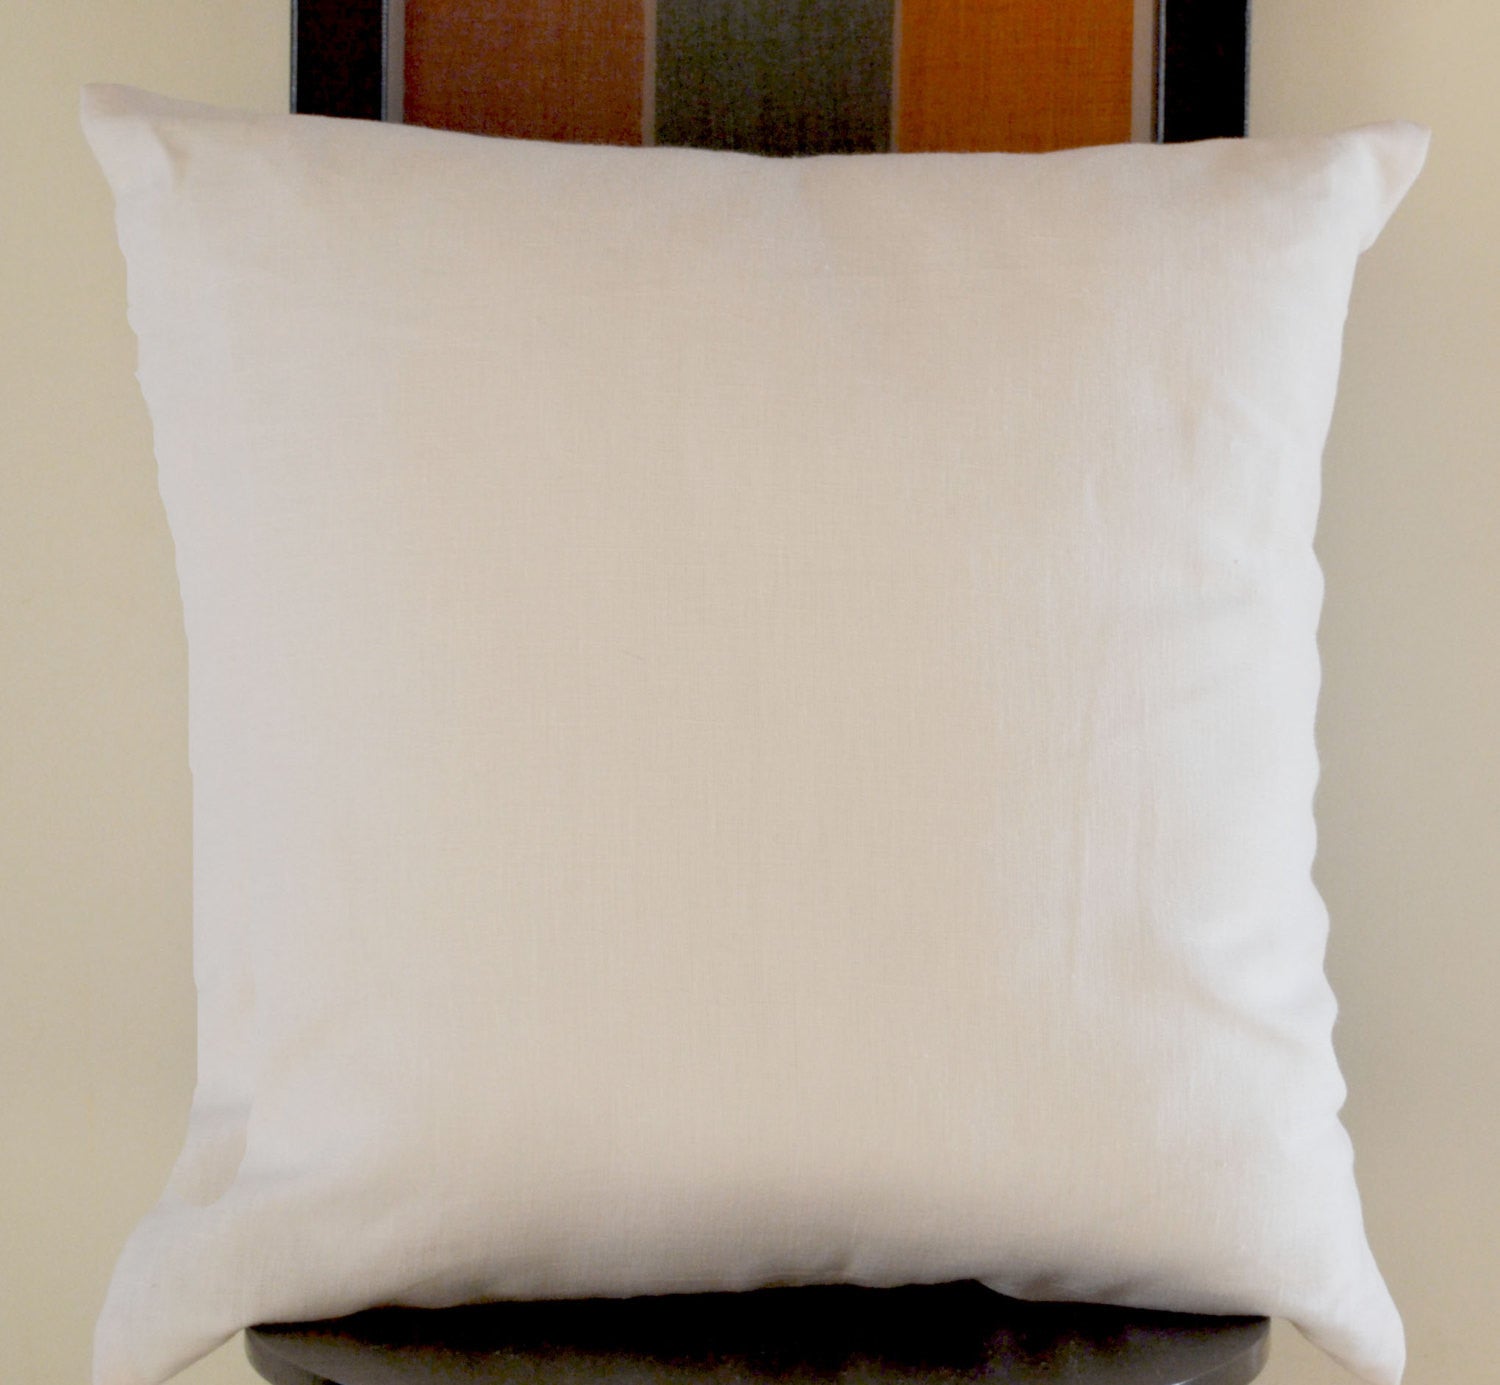 Handmade linen white pillow cover